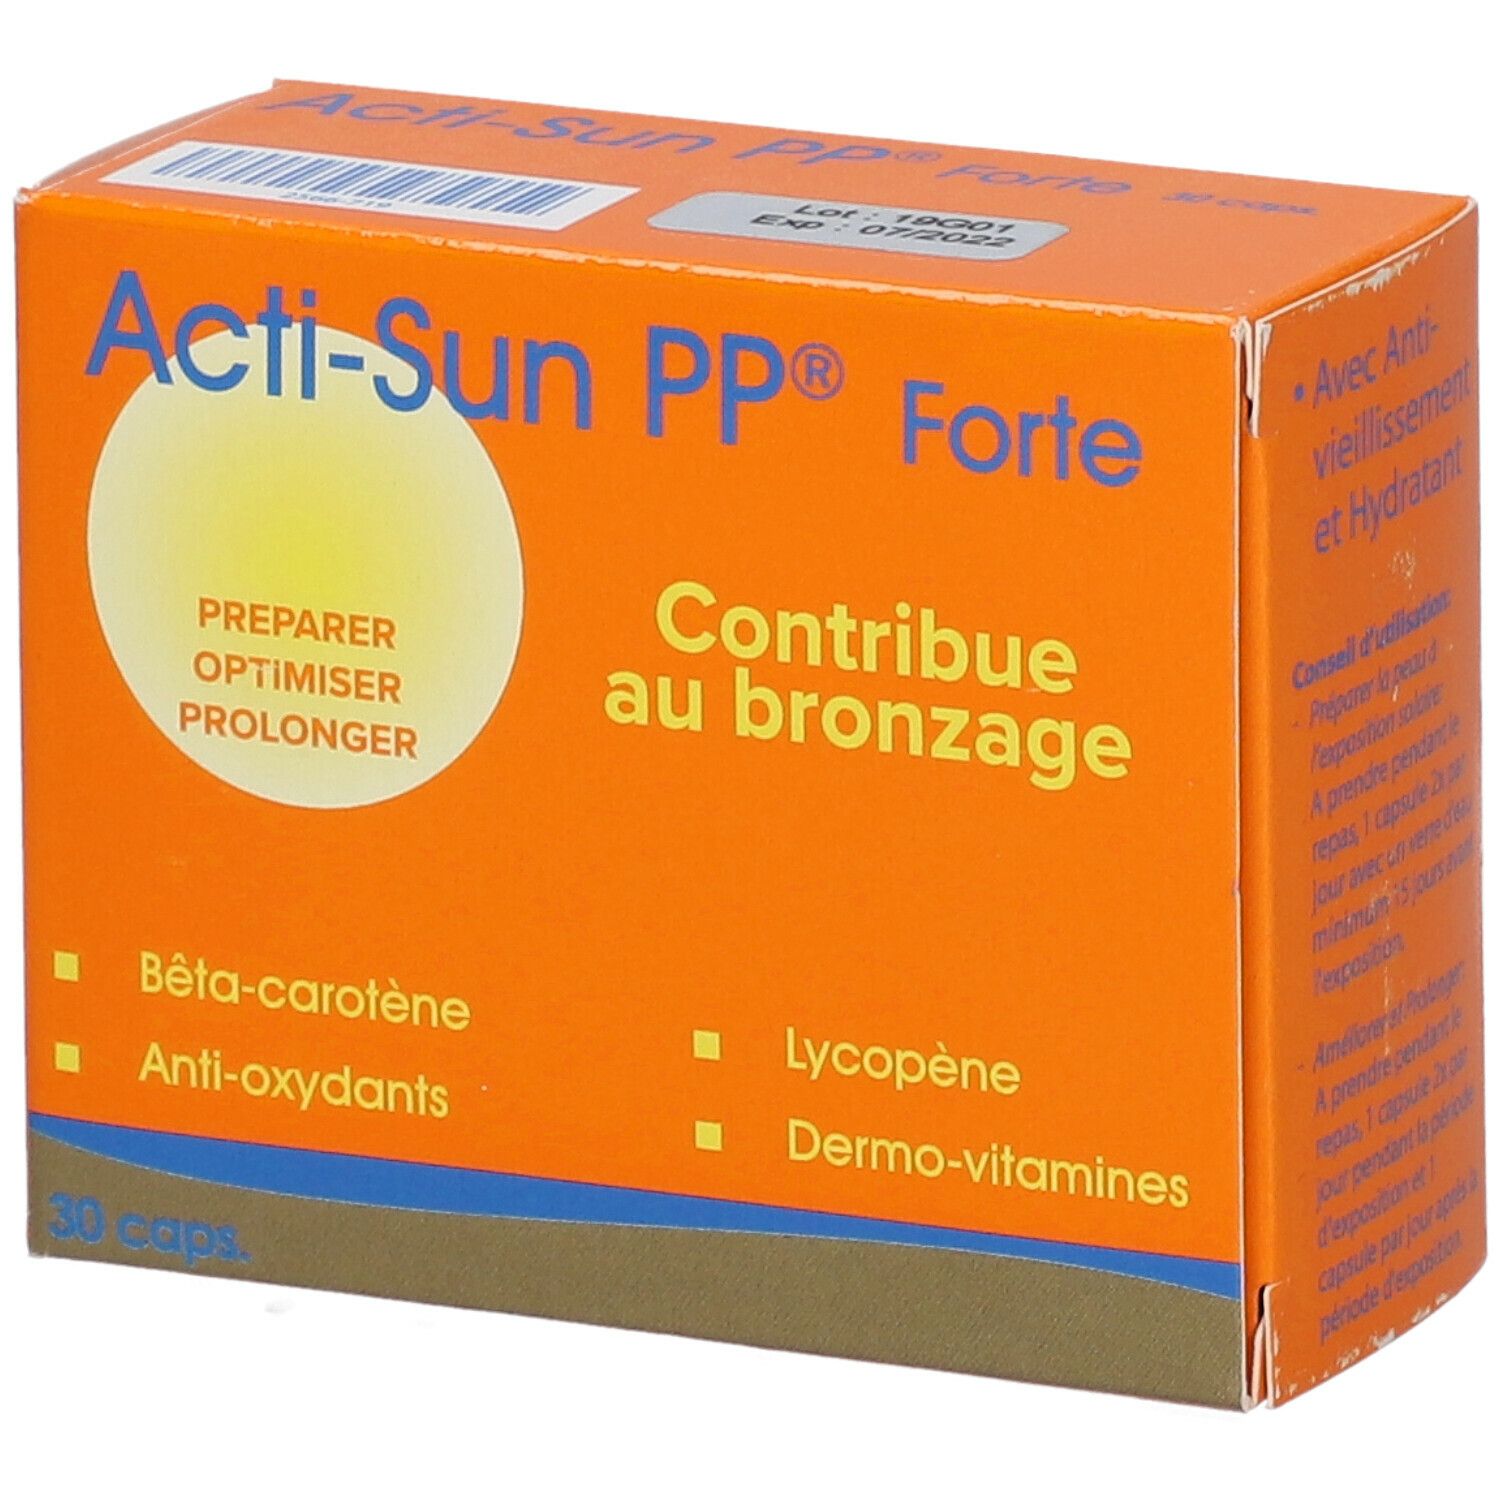 Acti-Sun PP® Forte